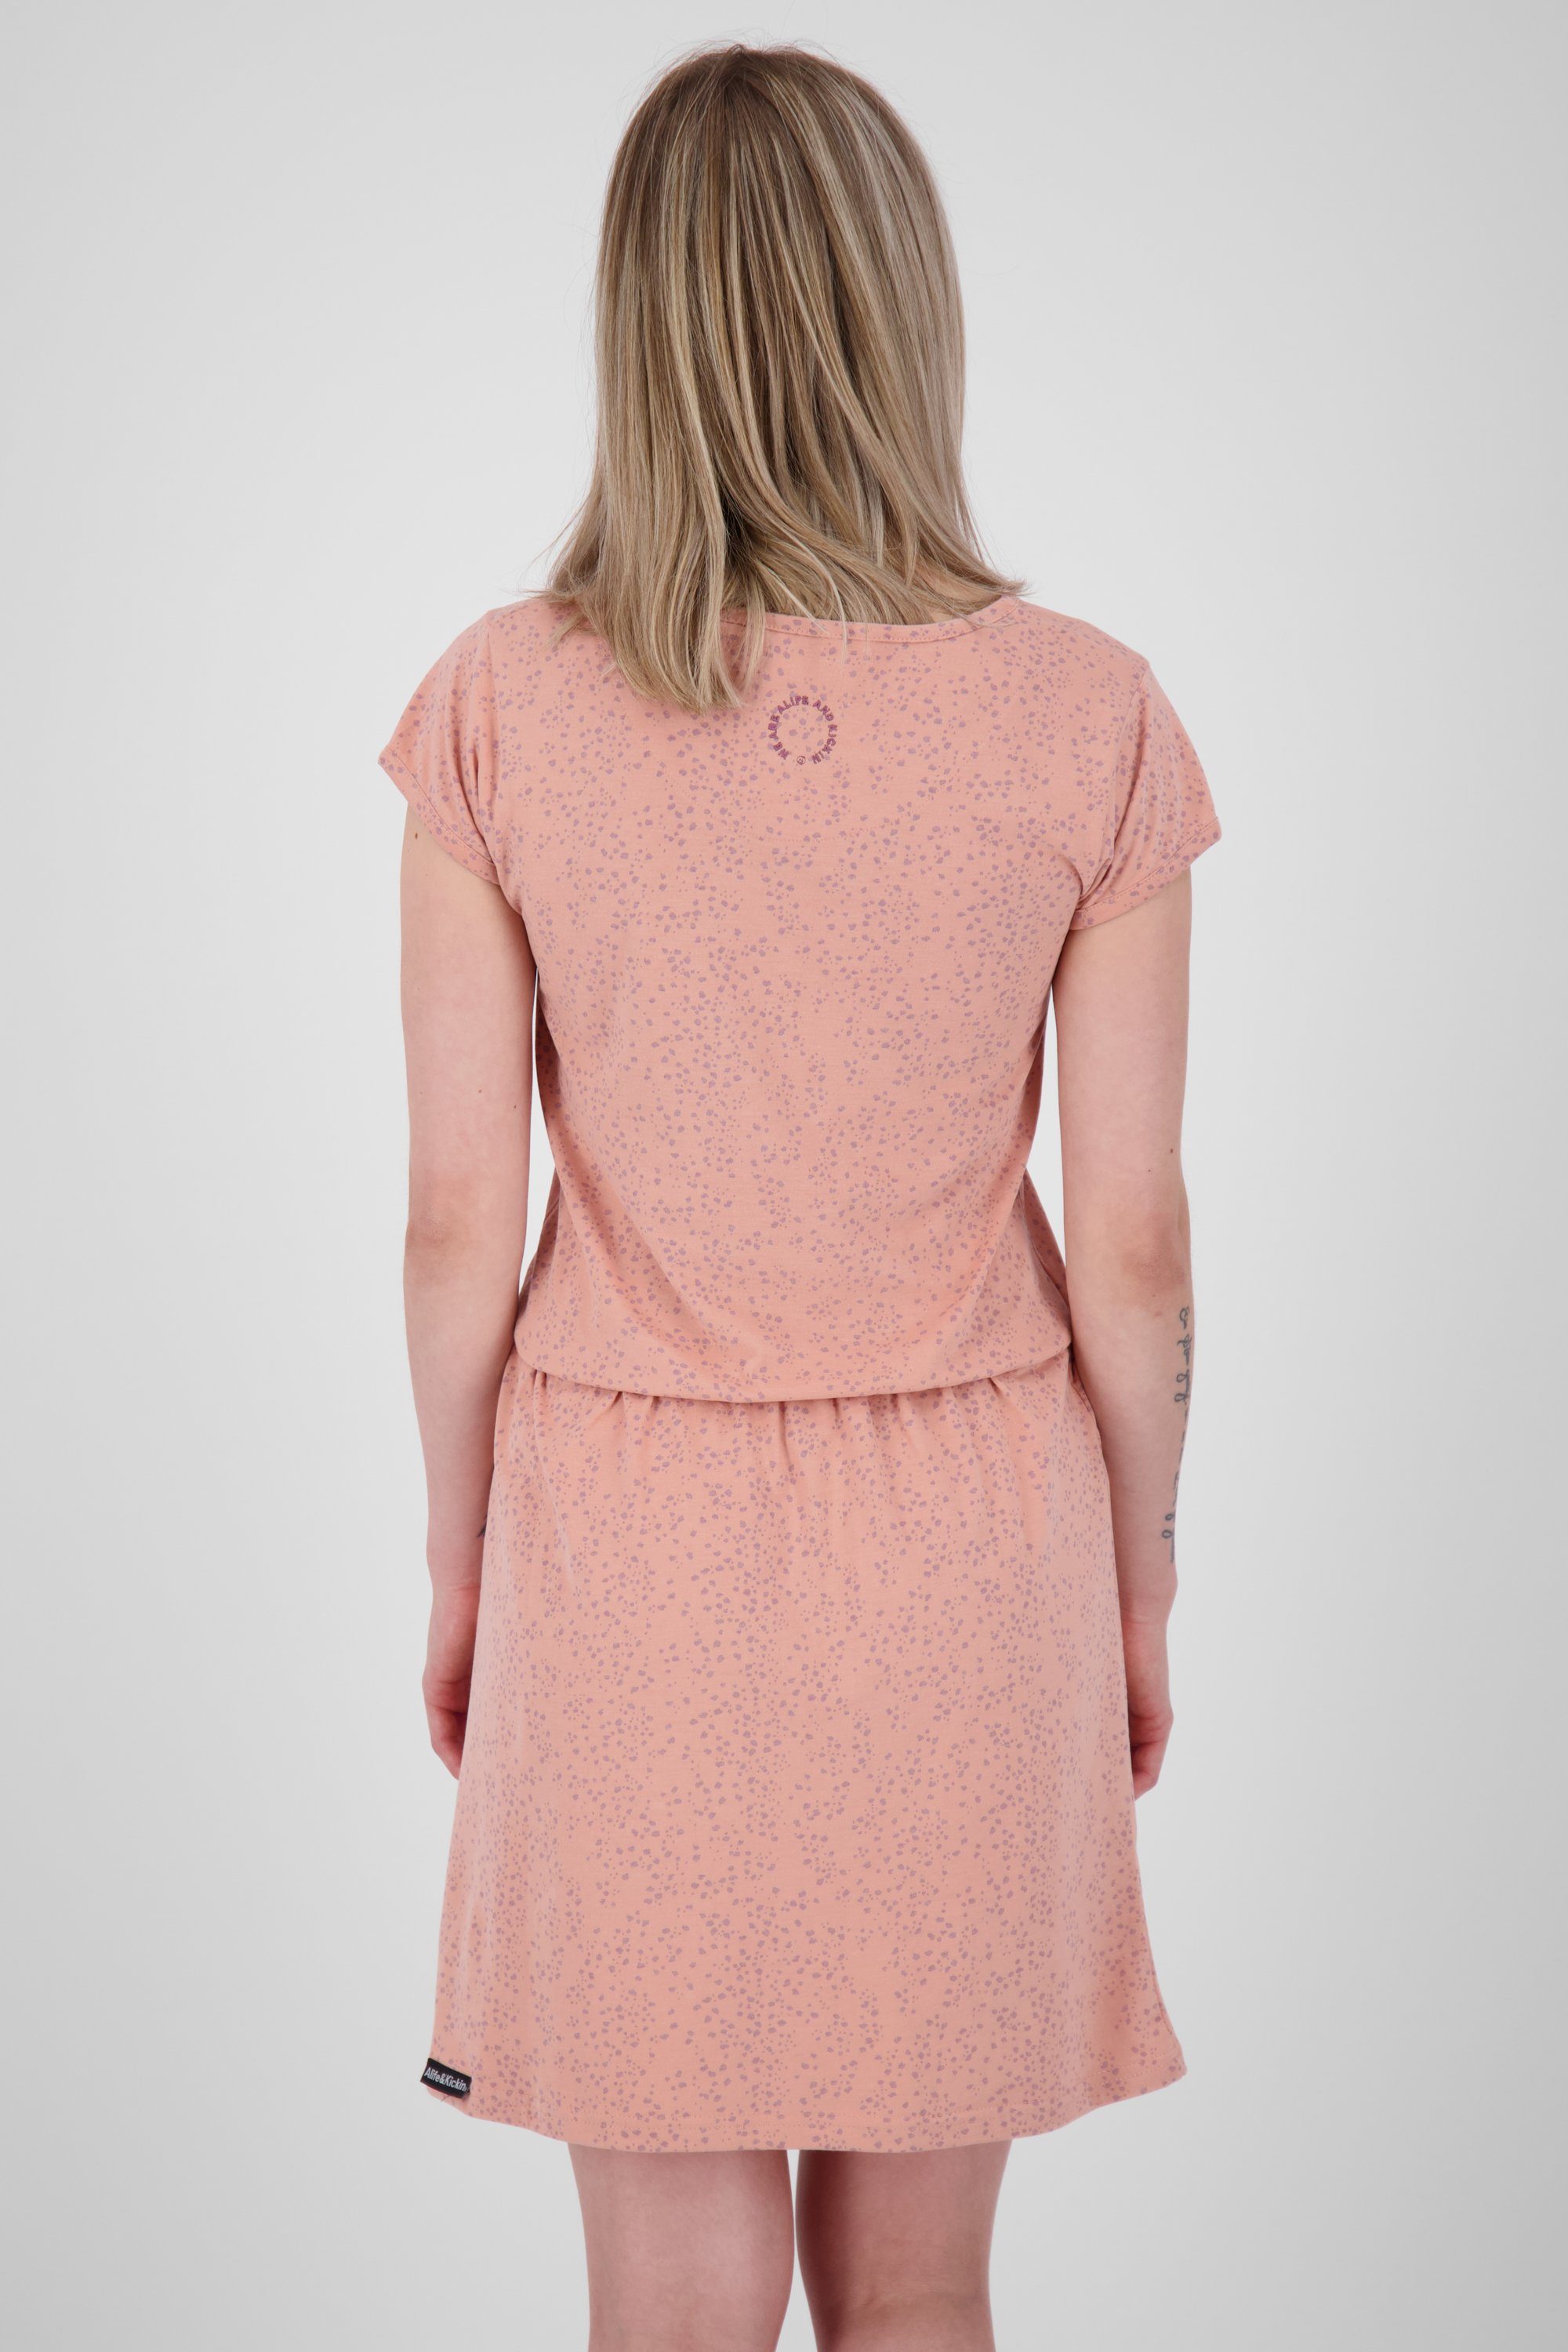 Alife & Kickin Shirt mahagonium Sommerkleid, ShannaAK melange Damen B Kleid Blusenkleid Dress